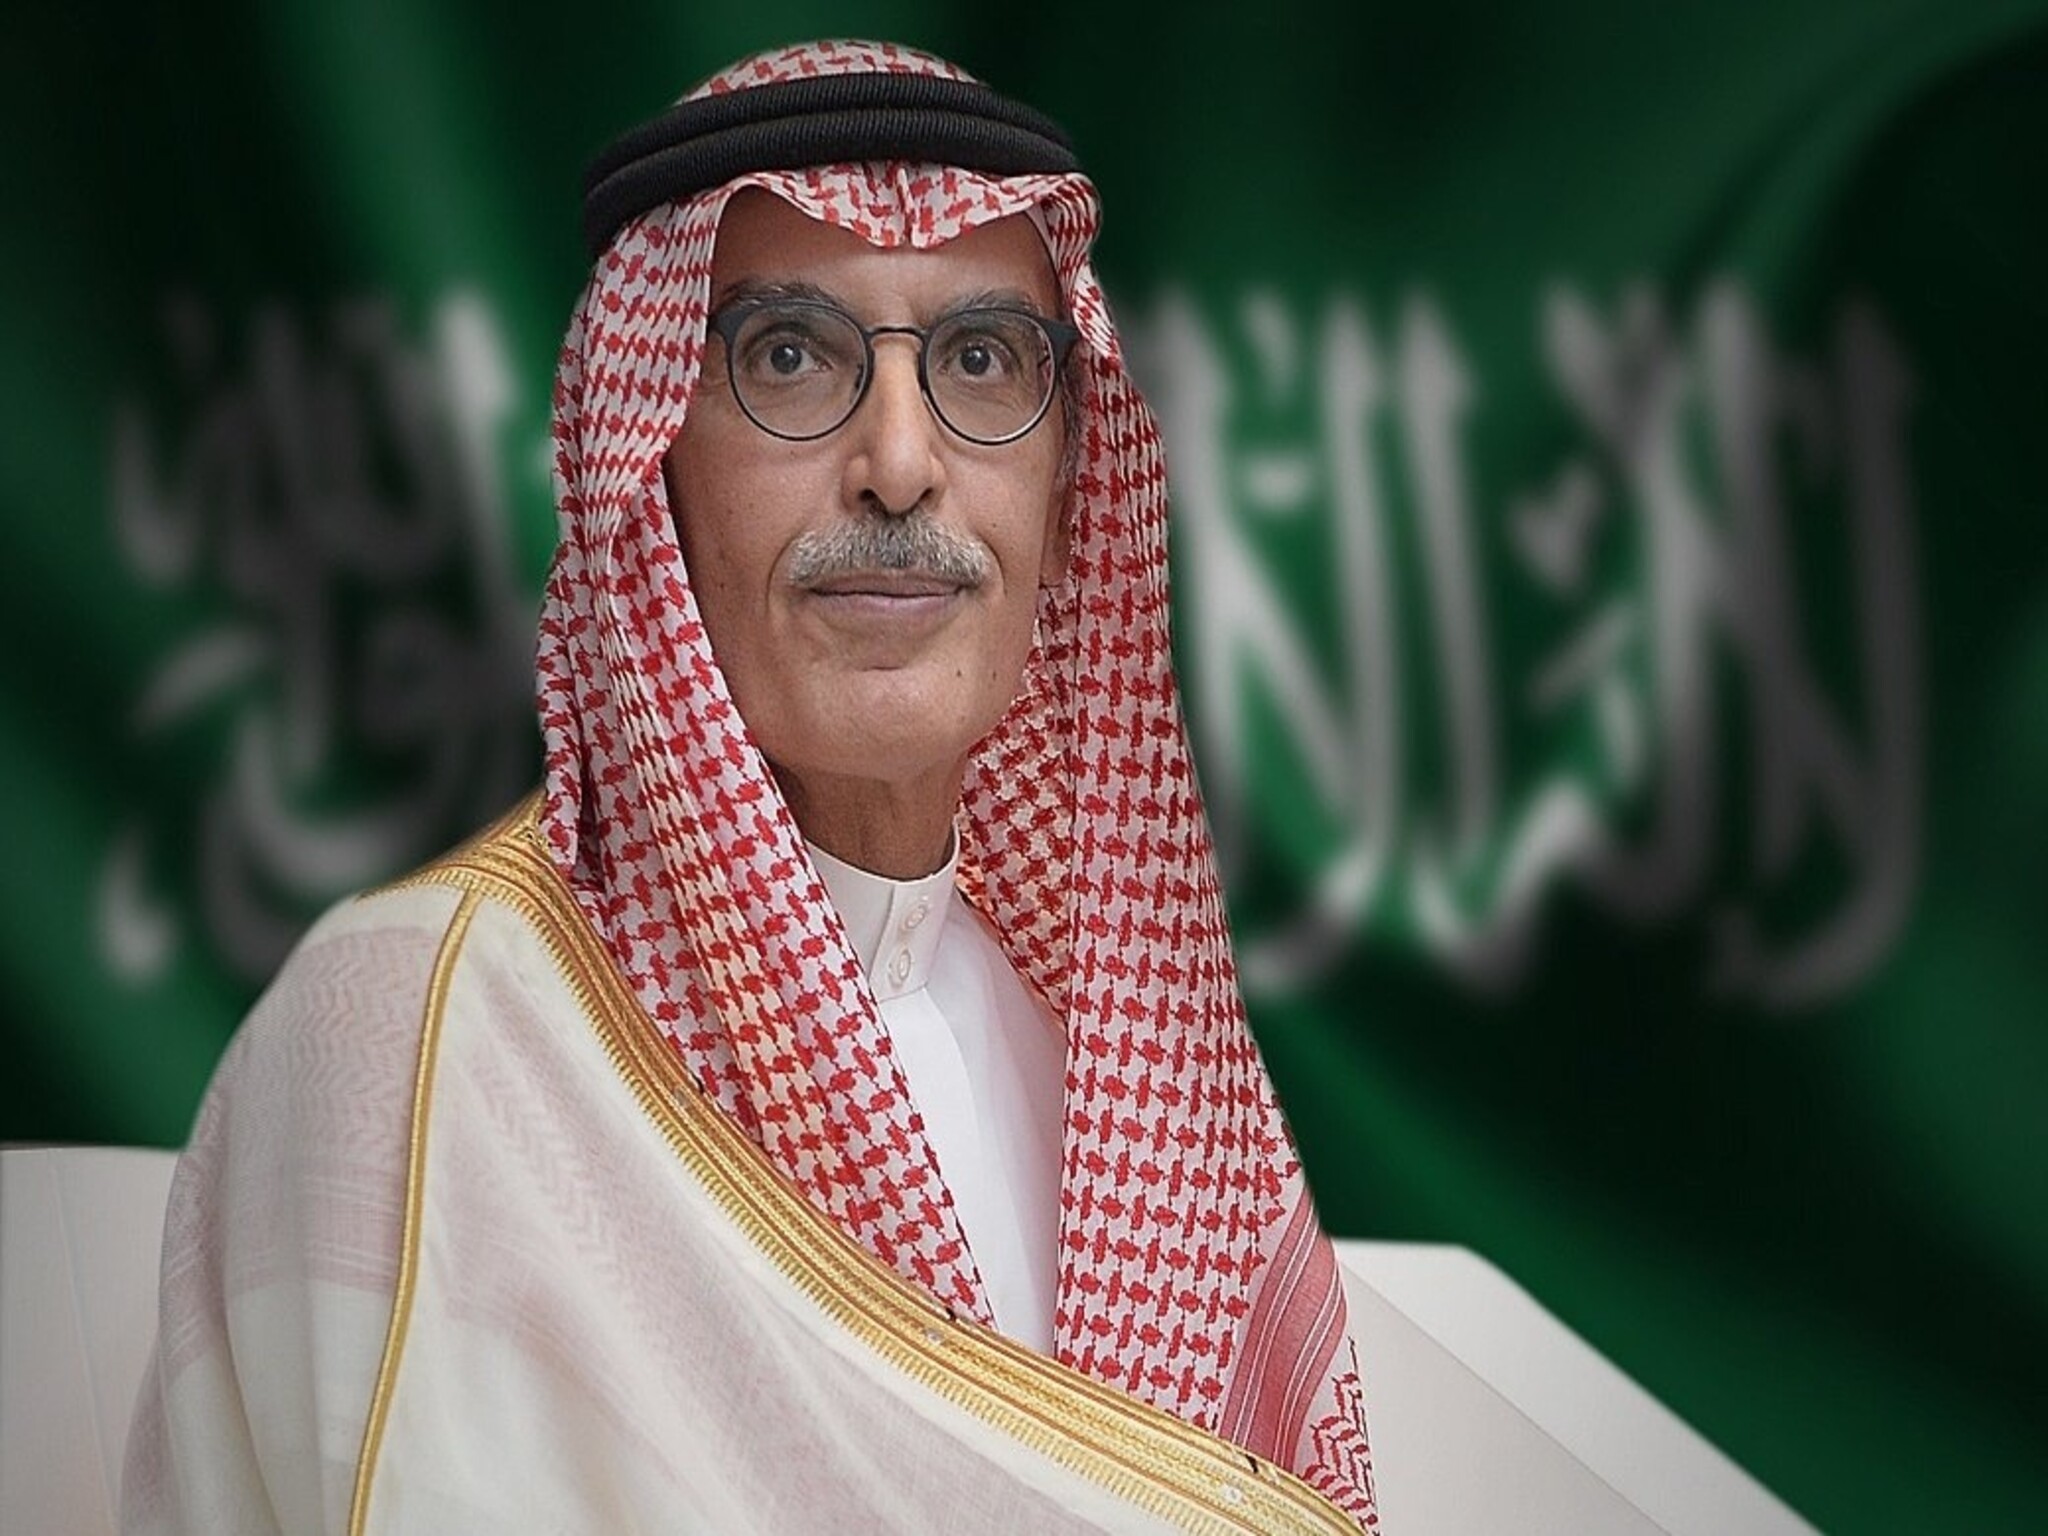 Famous poet Prince Badr bin Abdul Mohsin of Saudi Arabia passes away at age 75.